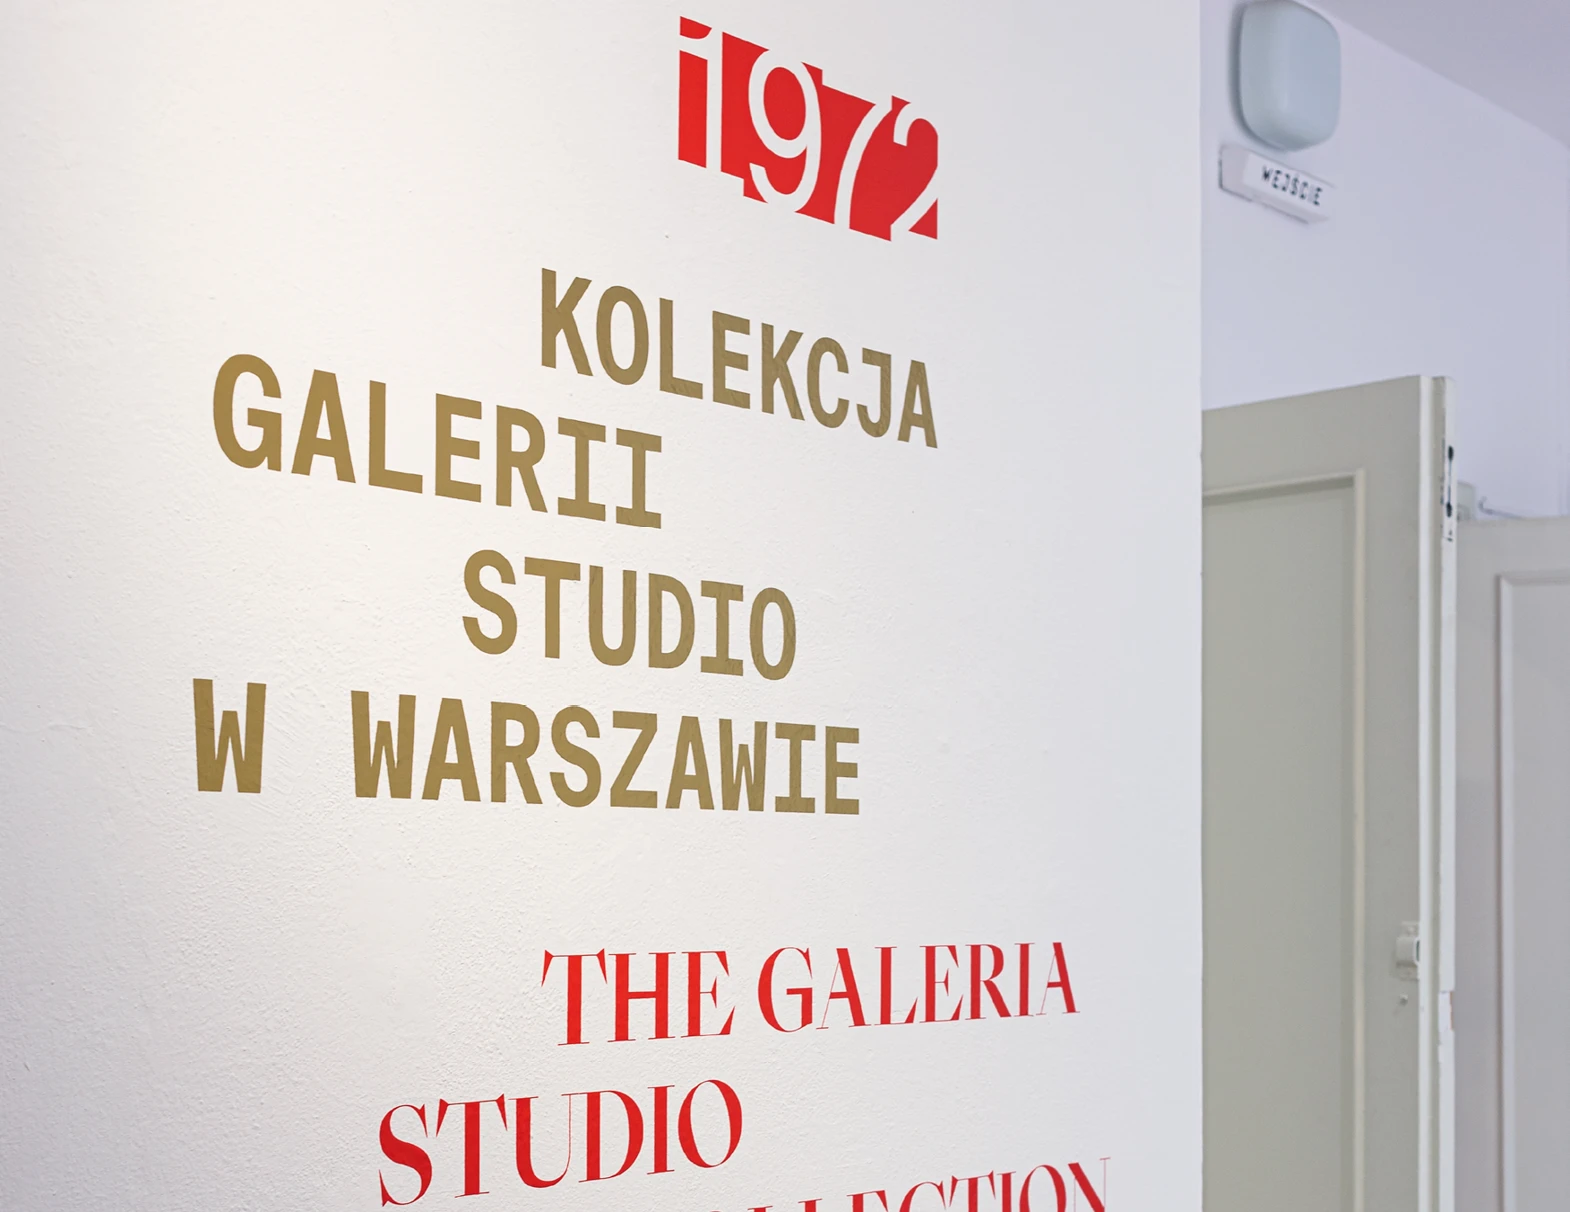 Kolekcja Galerii Studio w Warszawie